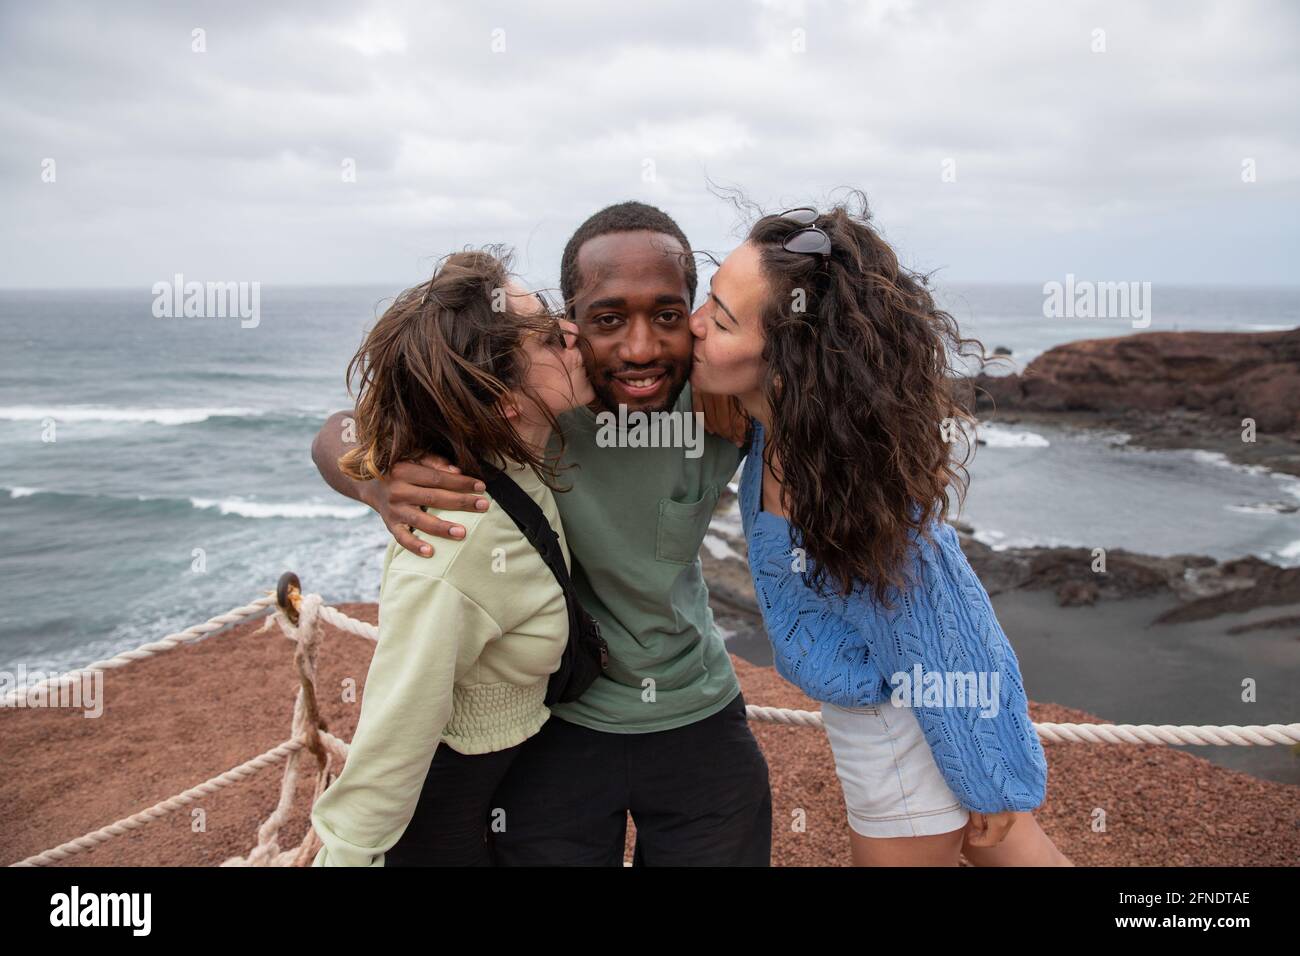 Un ragazzo africano riceve un bacio da due ragazze caucasiche durante una vacanza, un gruppo multirazziale felice sta avendo divertimento Foto Stock